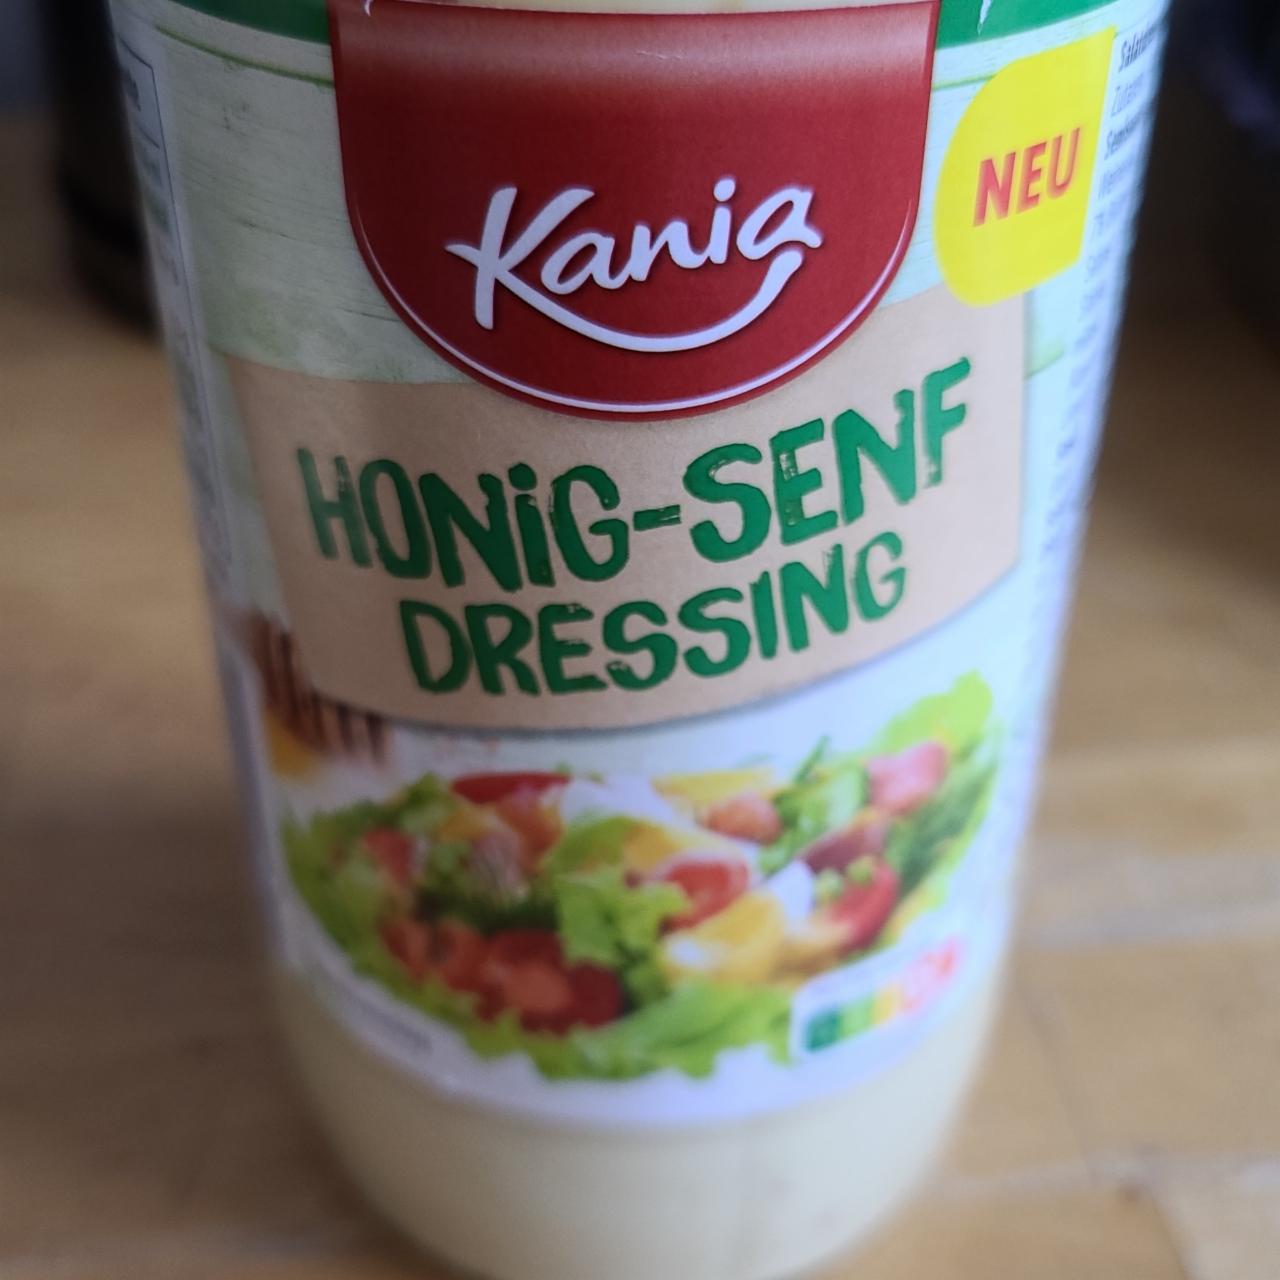 Fotografie - Honig-Senf Dressing Kania